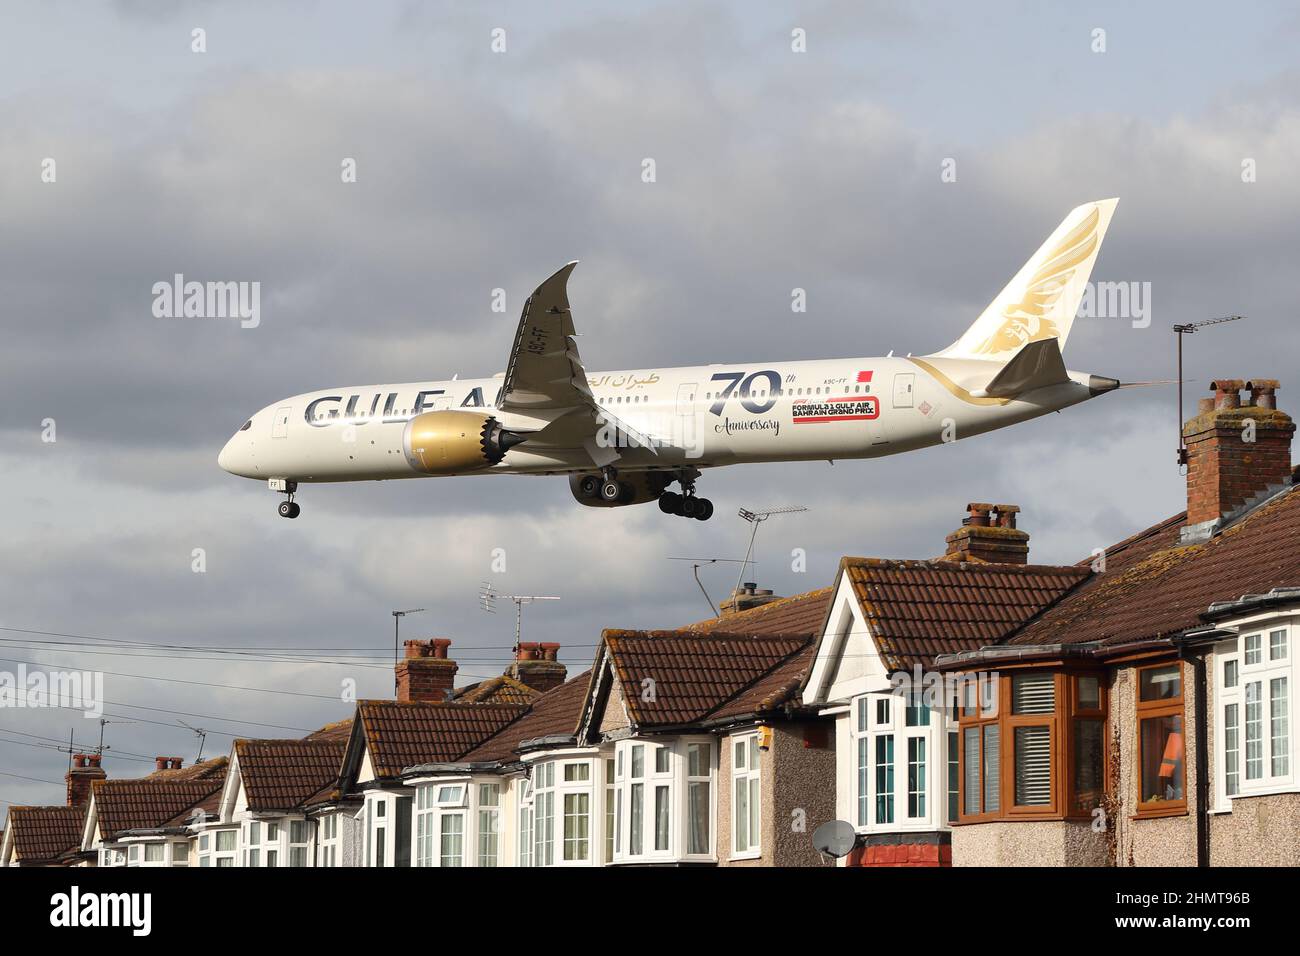 Un Boeing 787-9 Dreamliner de Gulf Air s'approche de l'aéroport d'Heathrow en survolant les toits de maisons de Myrtle Avenue, Londres, Royaume-Uni Banque D'Images